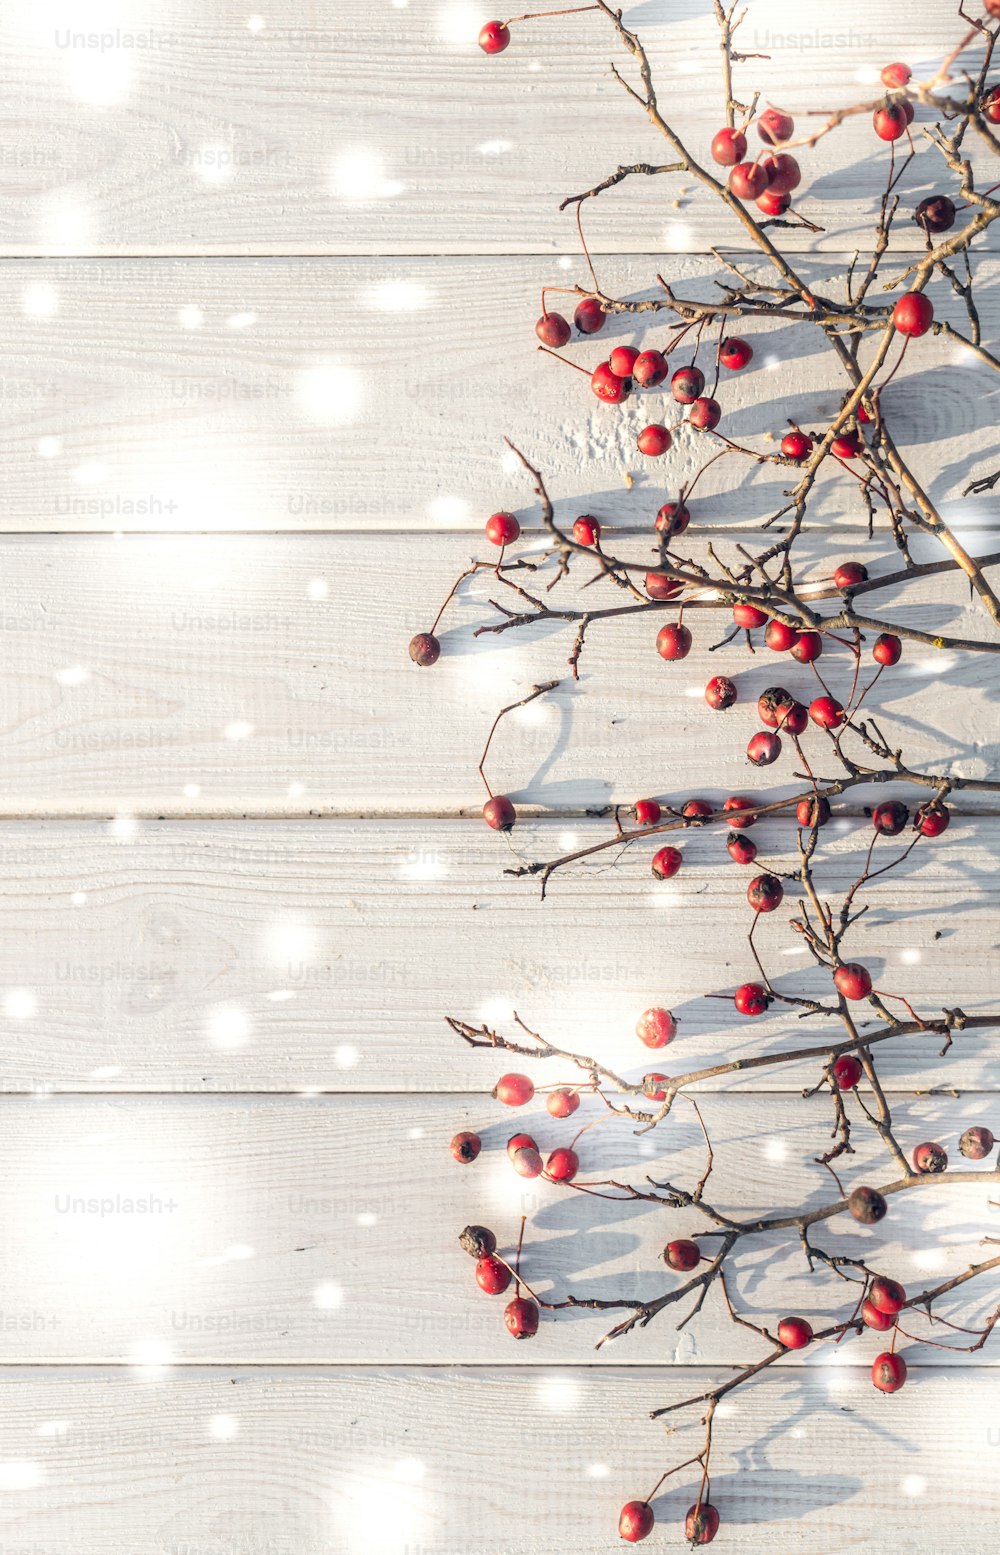 Fond festif d’hiver. Les baies rouge vif des baies d’aubépine mûres sur un fond d’élégantes planches blanches. Fond décoratif pour les cartes de vœux de Noël et du Nouvel An